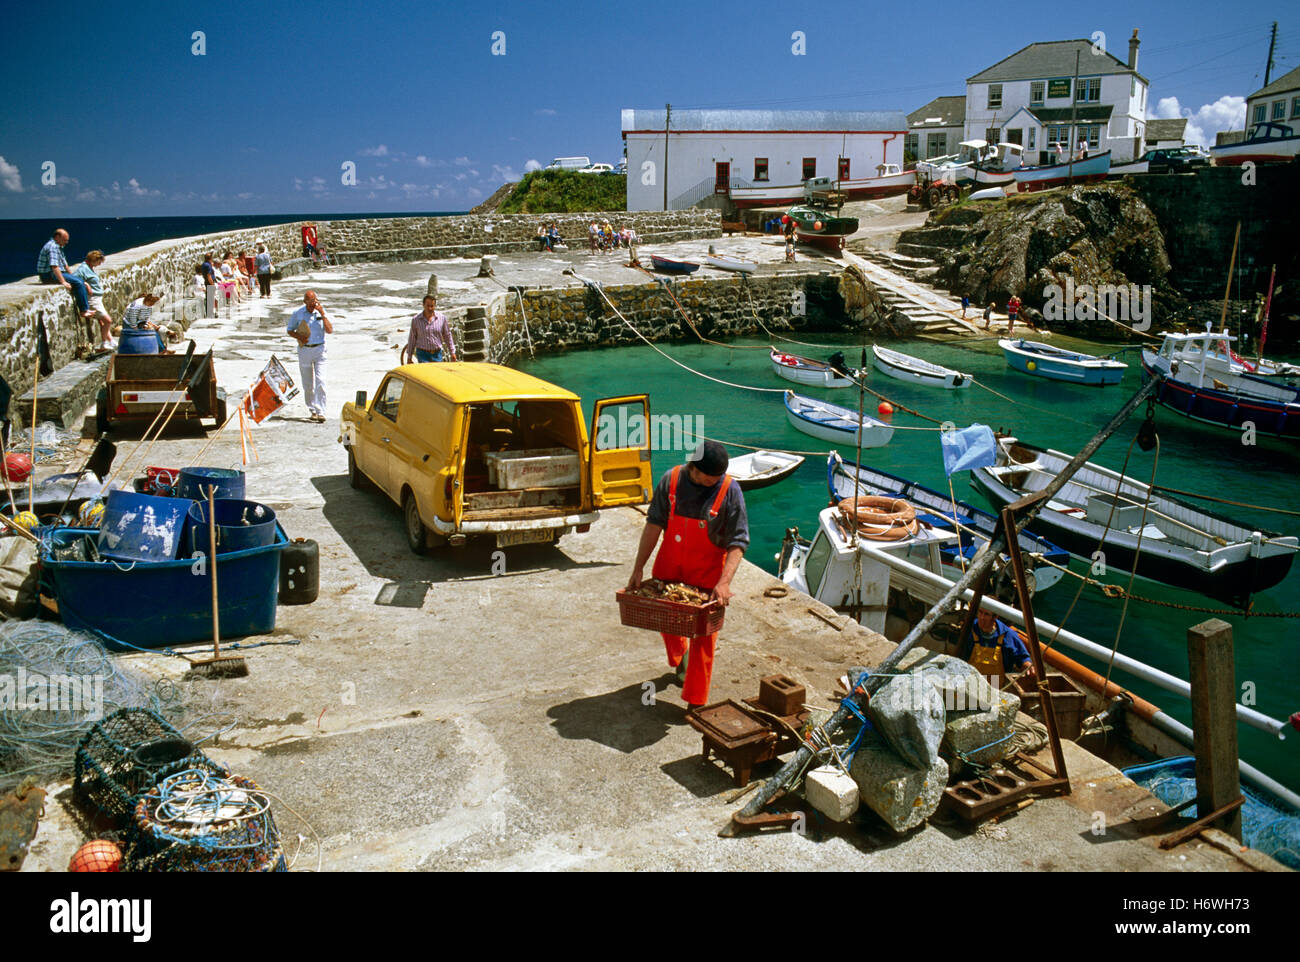 Village de pêcheurs cornouaillais Coverack en 1990, Cornwall, Angleterre, Royaume-Uni, Europe Banque D'Images